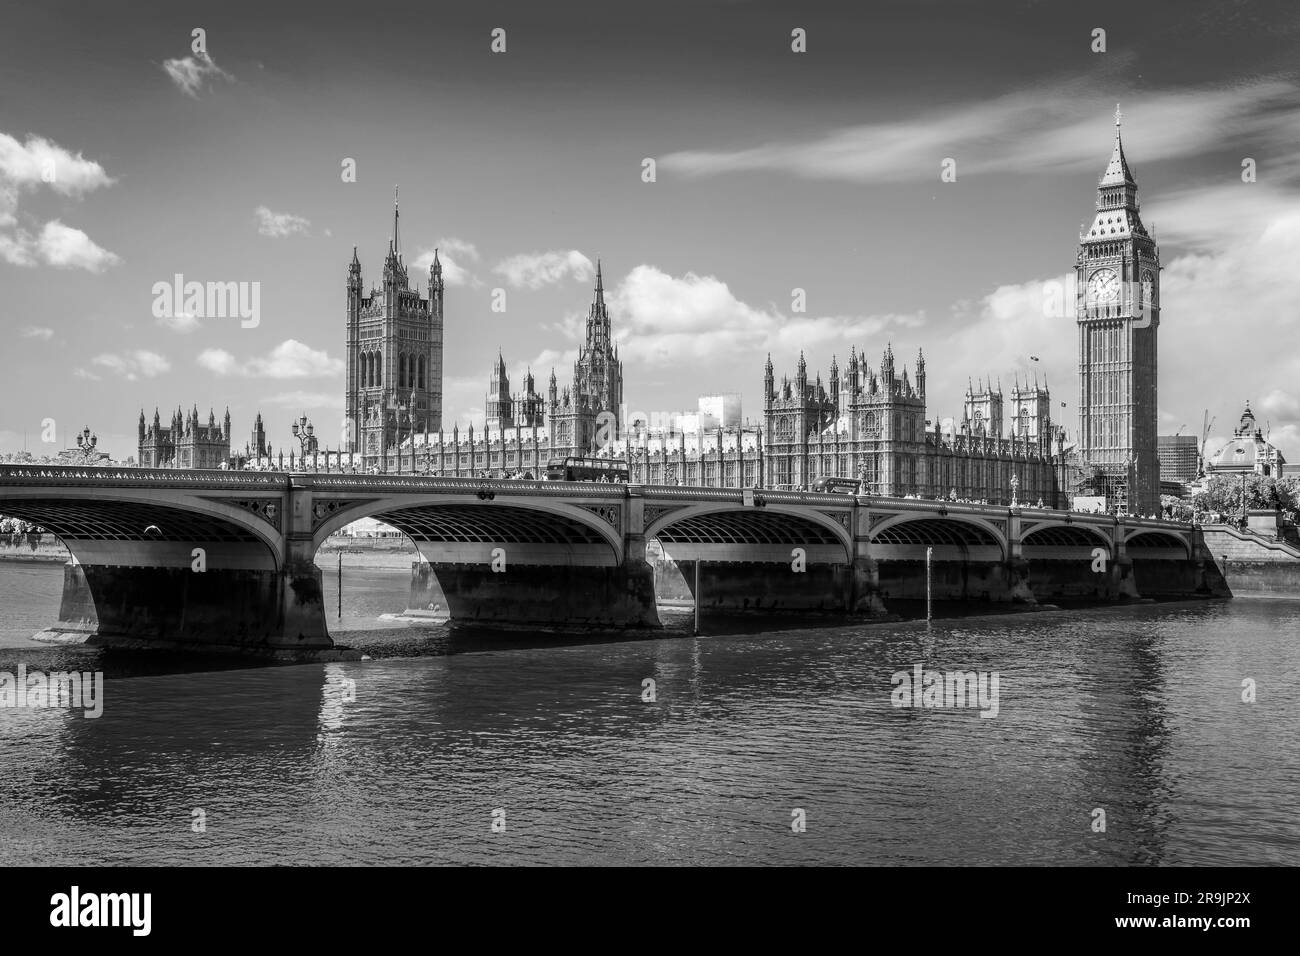 Pont de Westminster au-dessus de la Tamise, Big Ben et les chambres du Parlement à Londres, Royaume-Uni. Photographie en noir et blanc. Banque D'Images